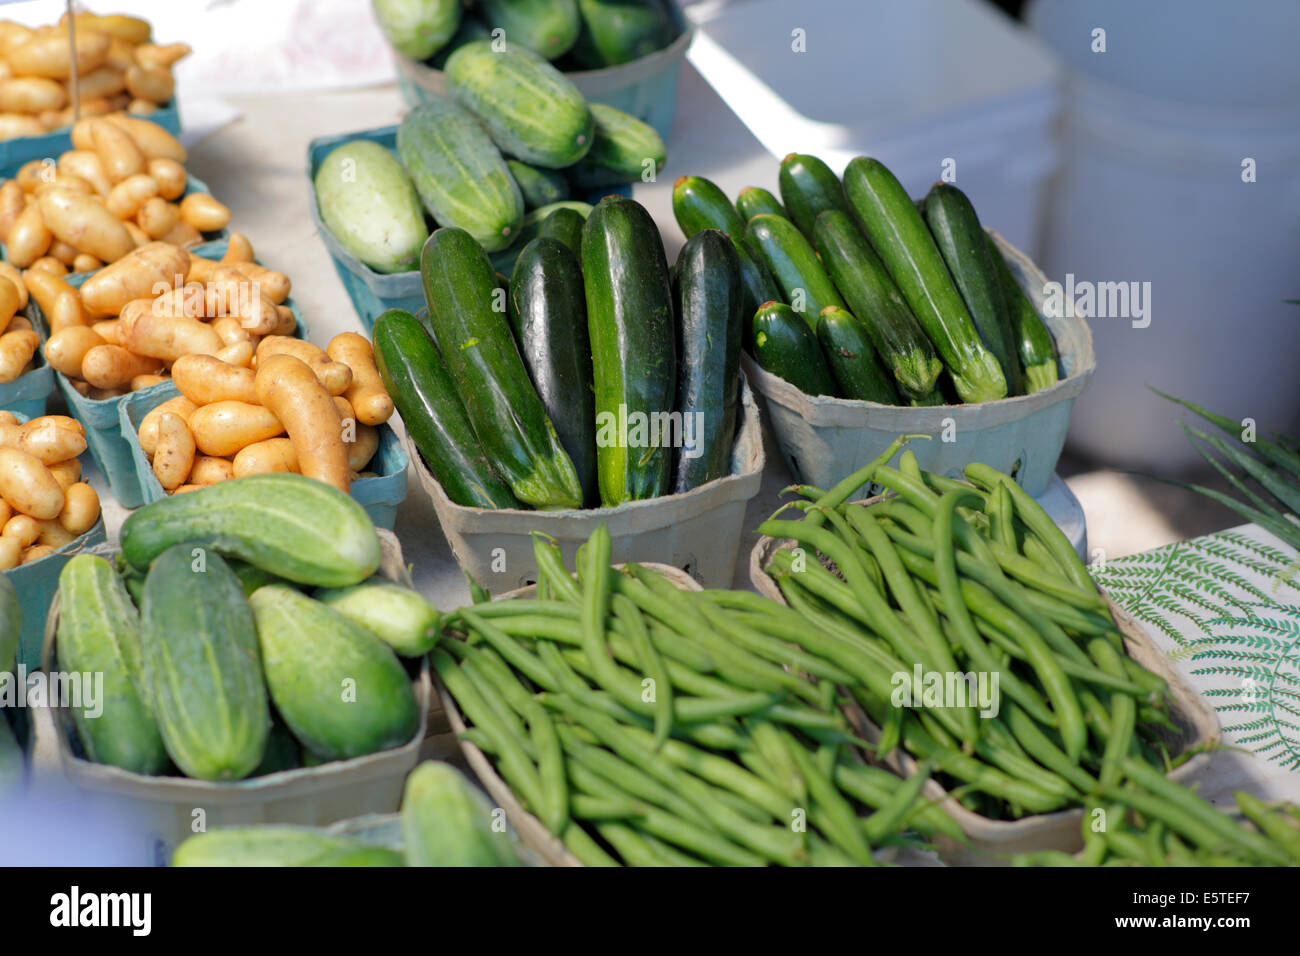 Grüne Bohnen, Zucchini, Gurken und kleine Kartoffeln. Stockfoto